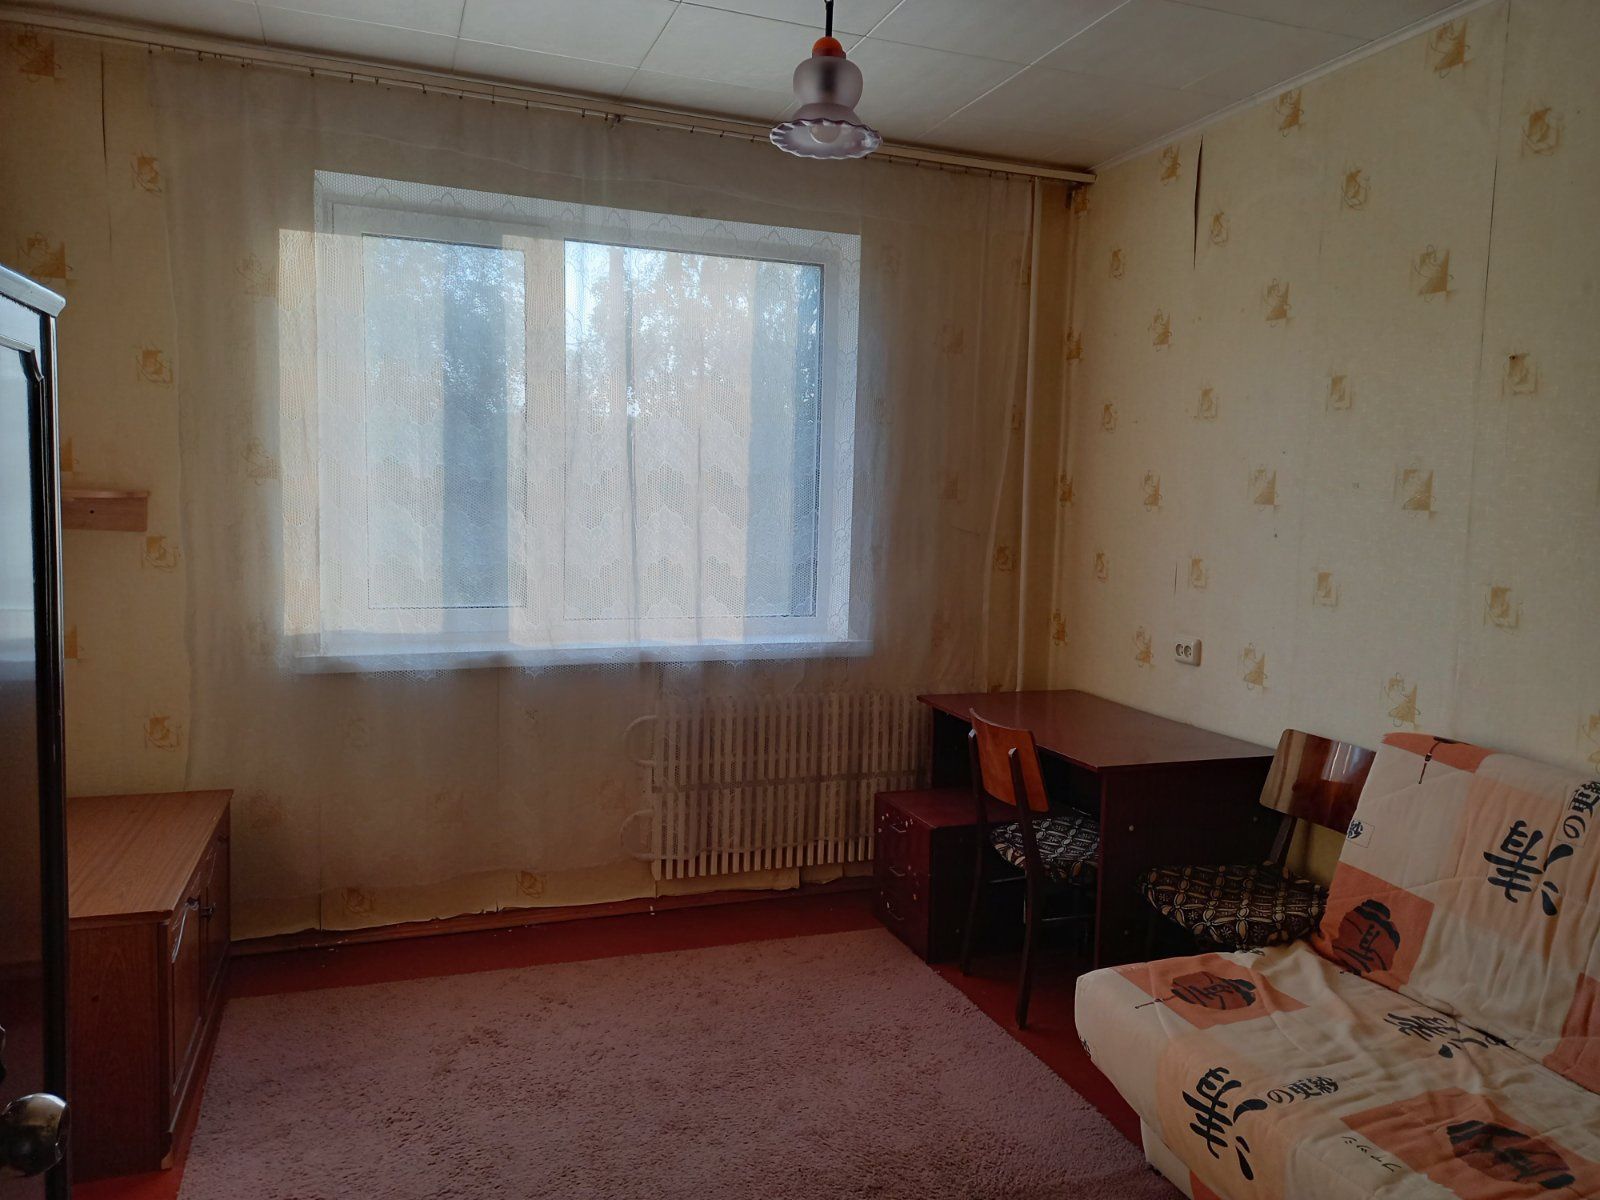 Сдам 2 комнатную квартиру метро Алексеевская на длительный срок